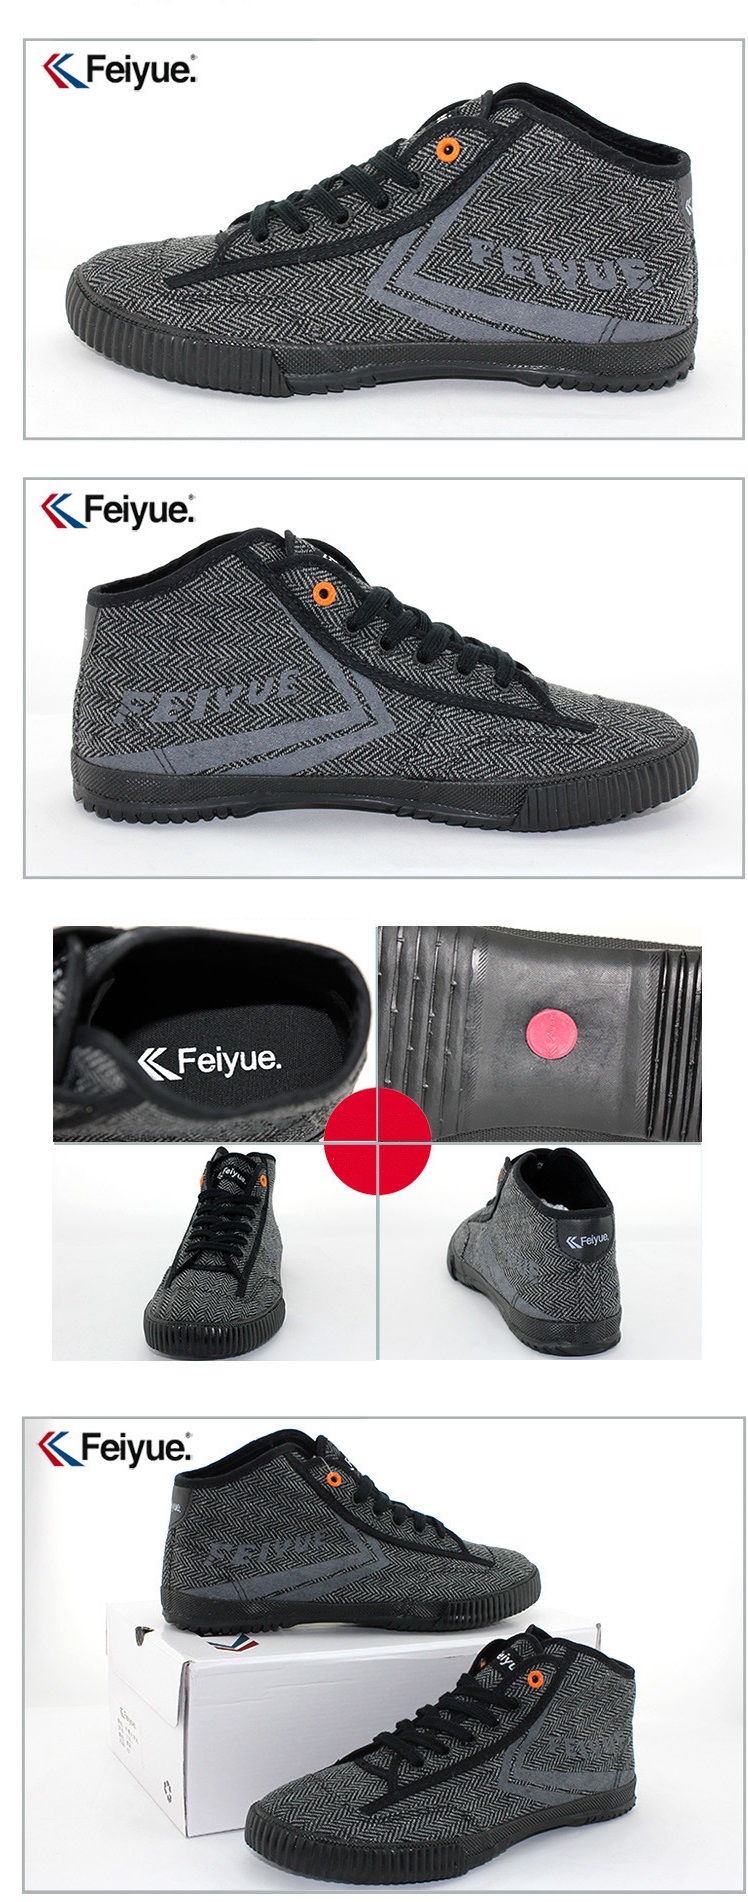 Feiyue plain sneaker Detail image